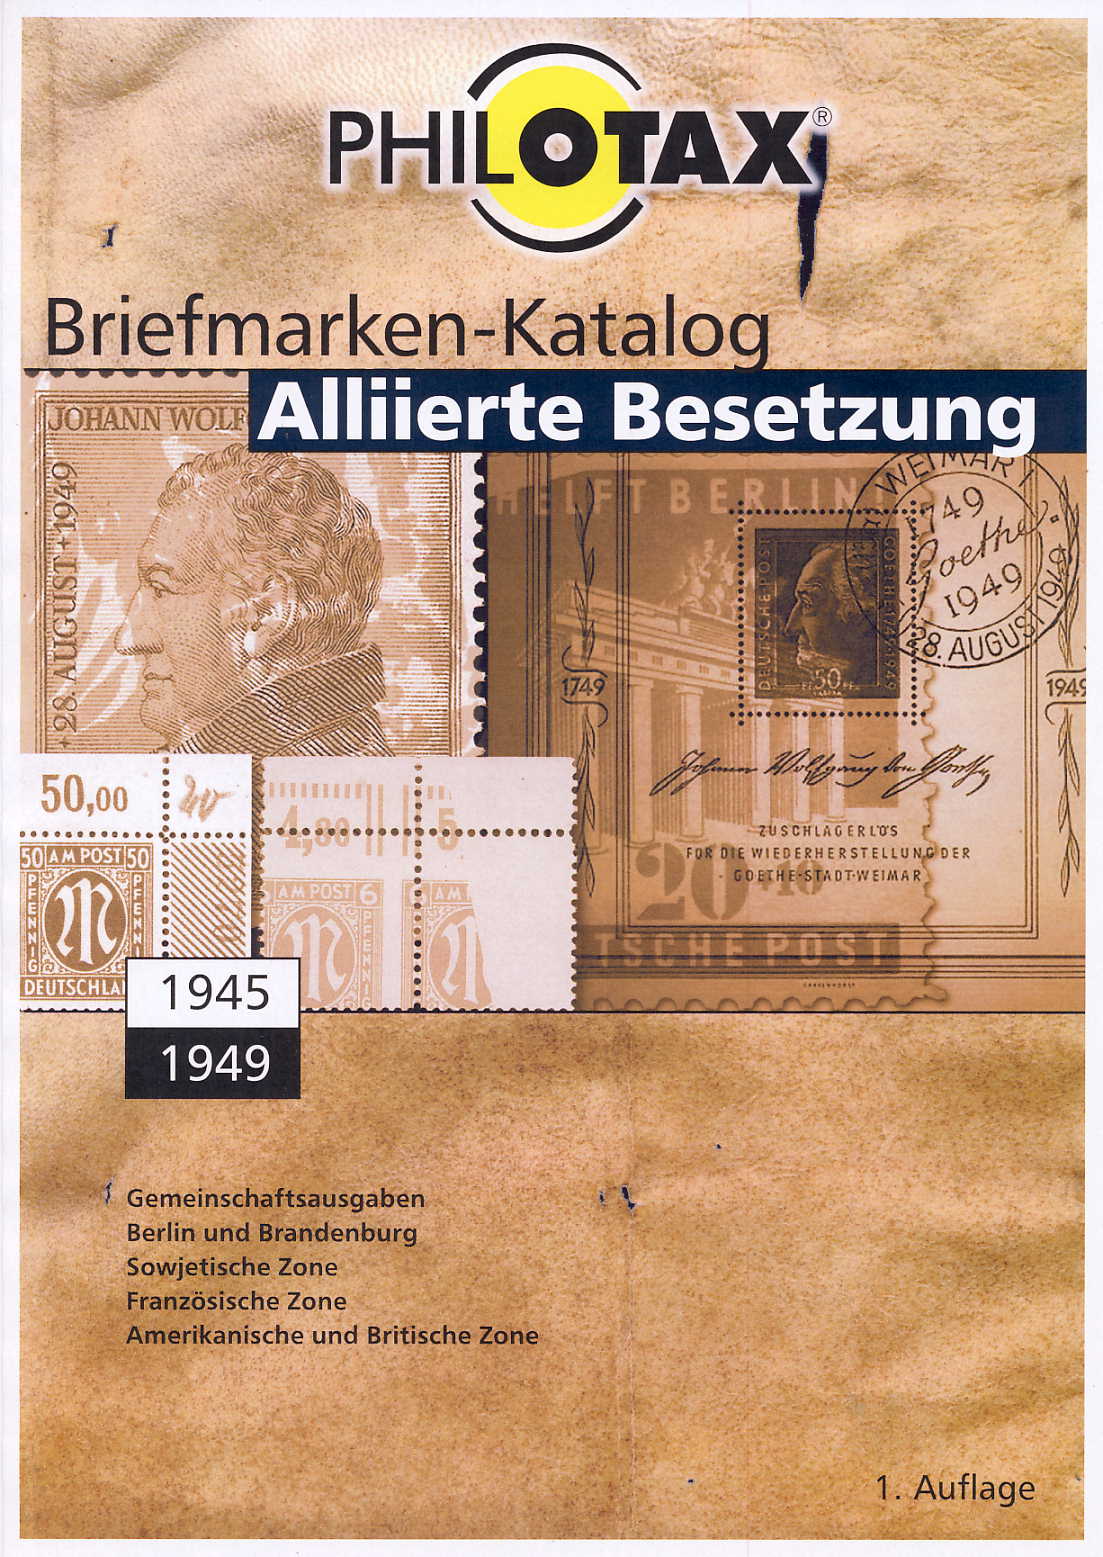 PHILOTAX Alliierte Besetzung Spezial-Katalog auf DVD 1. Auflage